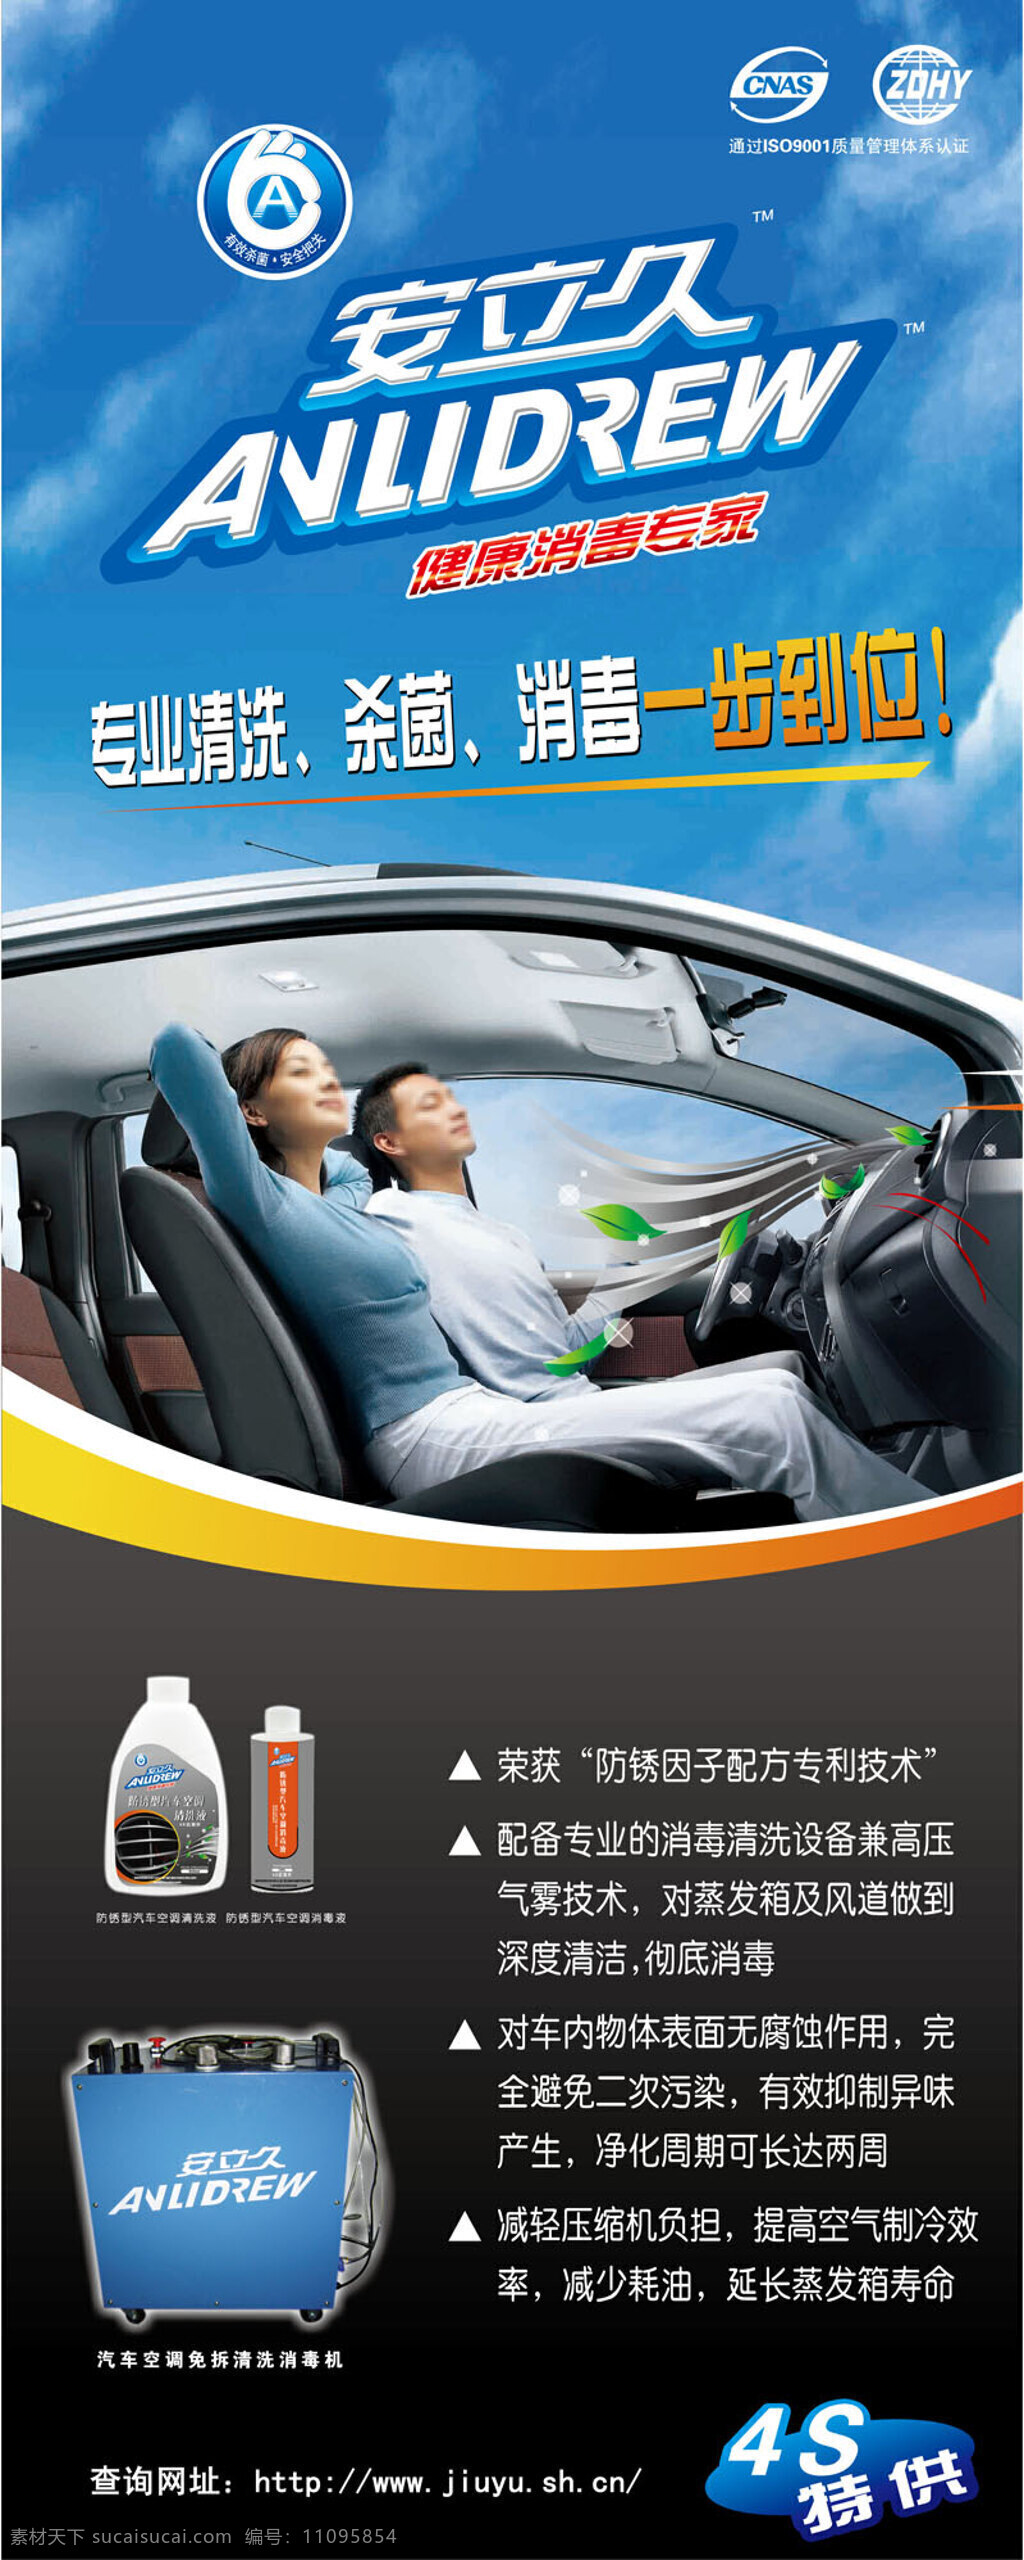 车载 空调 清洗剂 宣传海报 汽车 汽车广告 广告设计模板 简约 时尚